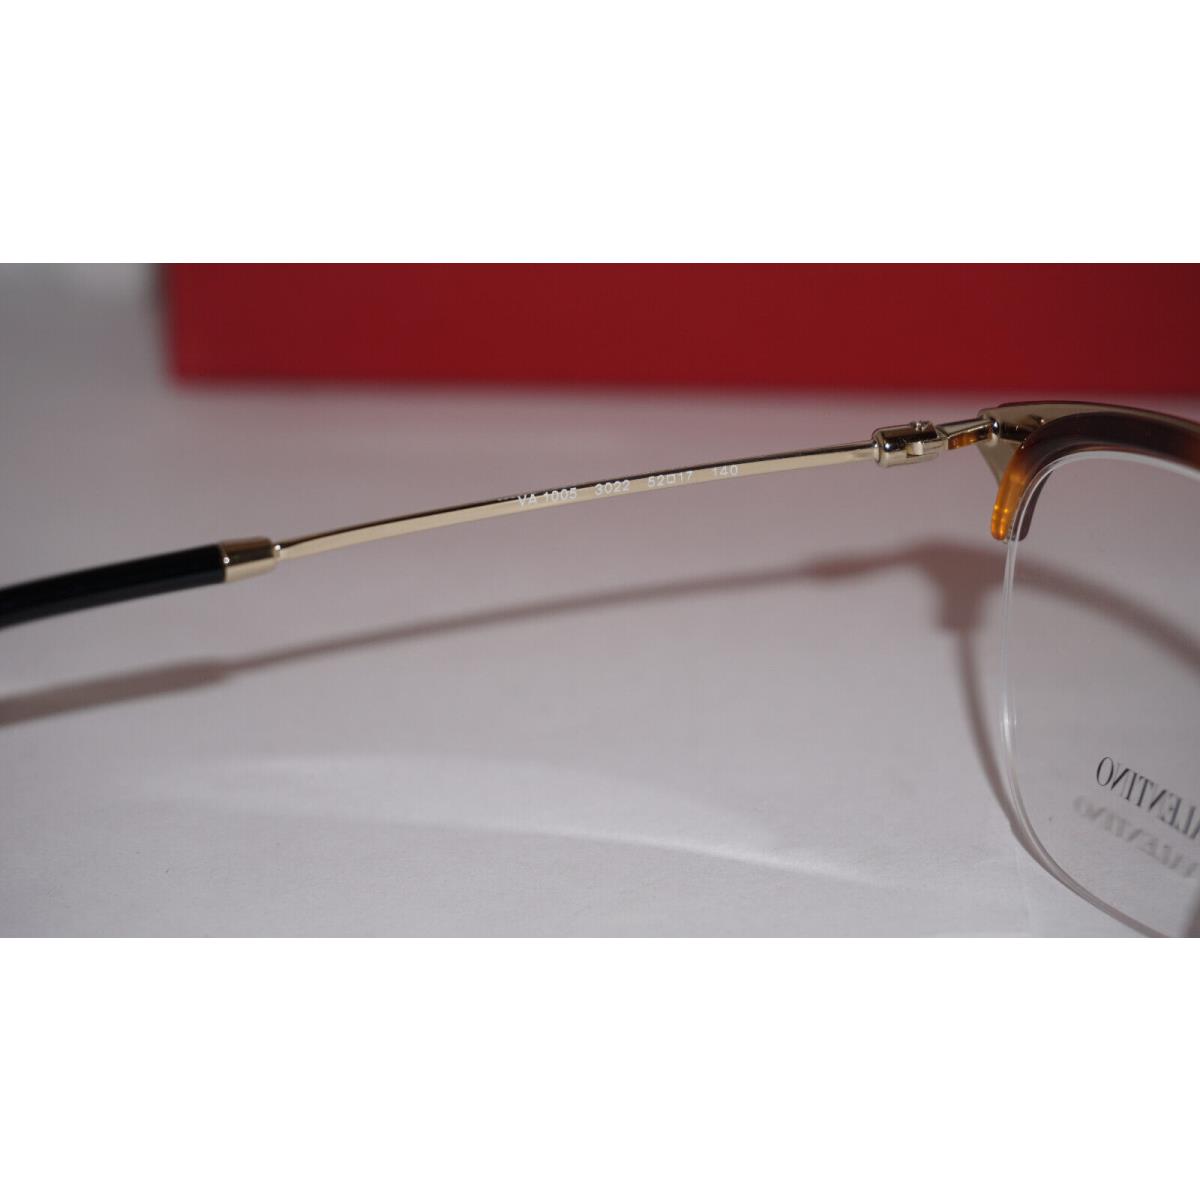 Valentino eyeglasses  - Half Rim Tortoise Gold , Half Rim Tortoise Gold Frame